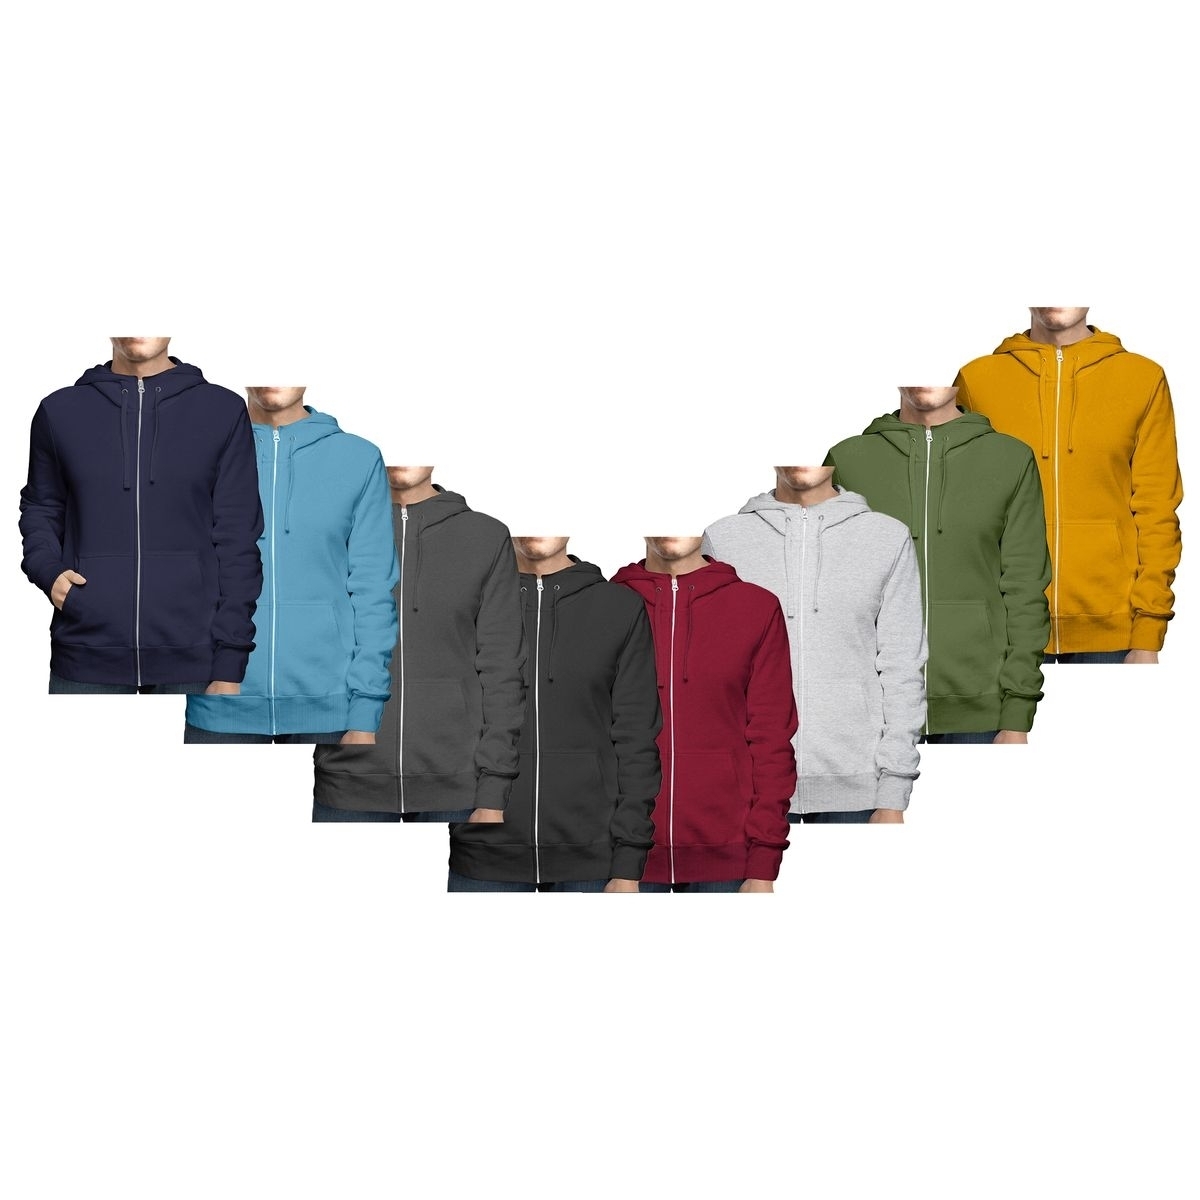 Men's Winter Warm Cozy Full Zip-Up Fleece Lined Soft Hoodie Sweatshirt - Grey, Medium